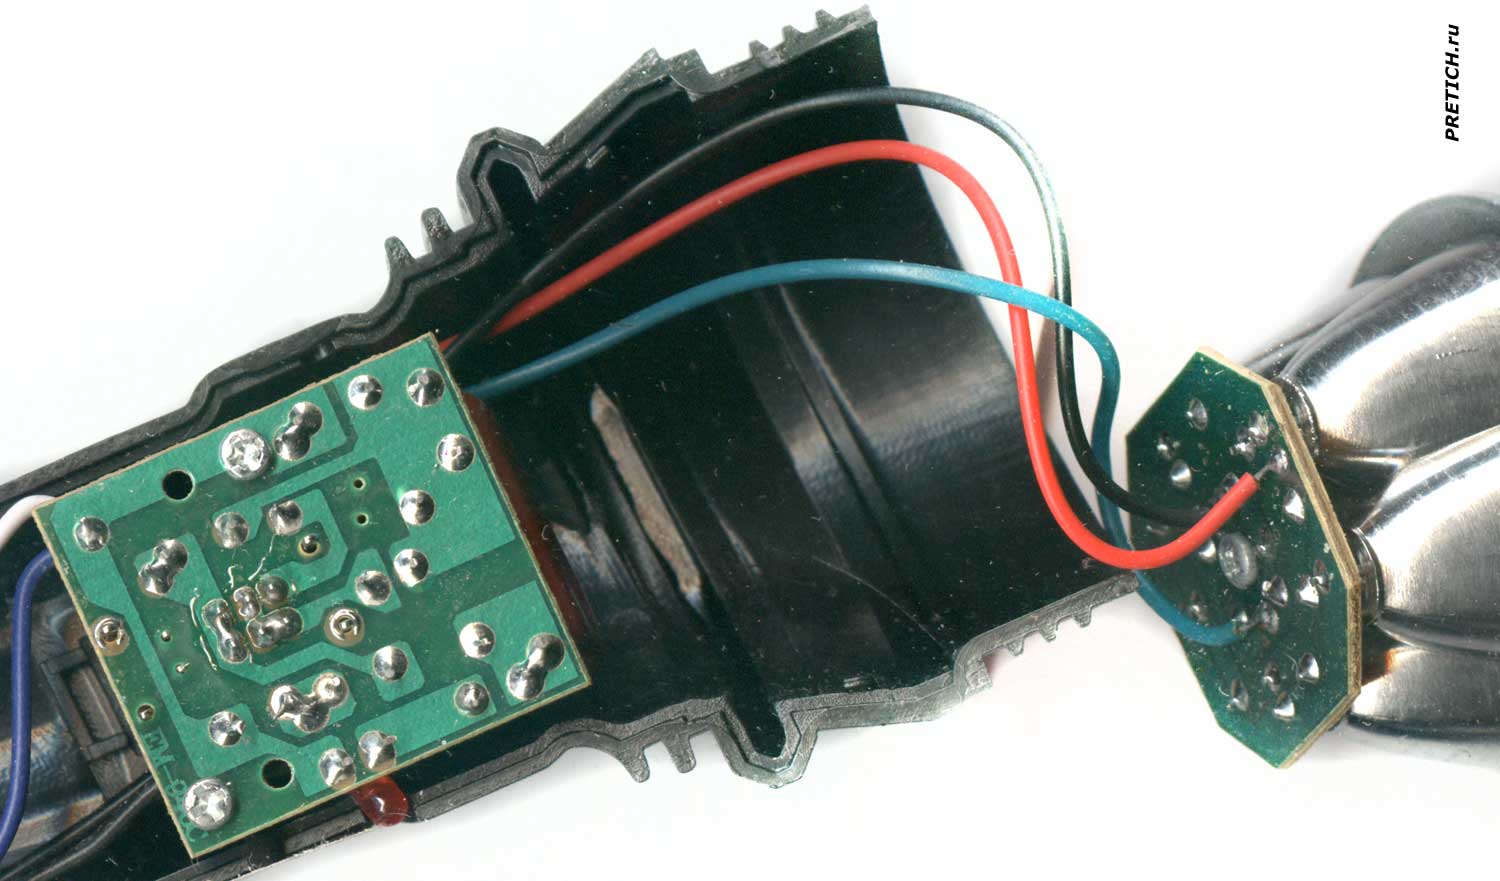 Emater EM-910 схема LED-фонарика, переделка или замена АКБ